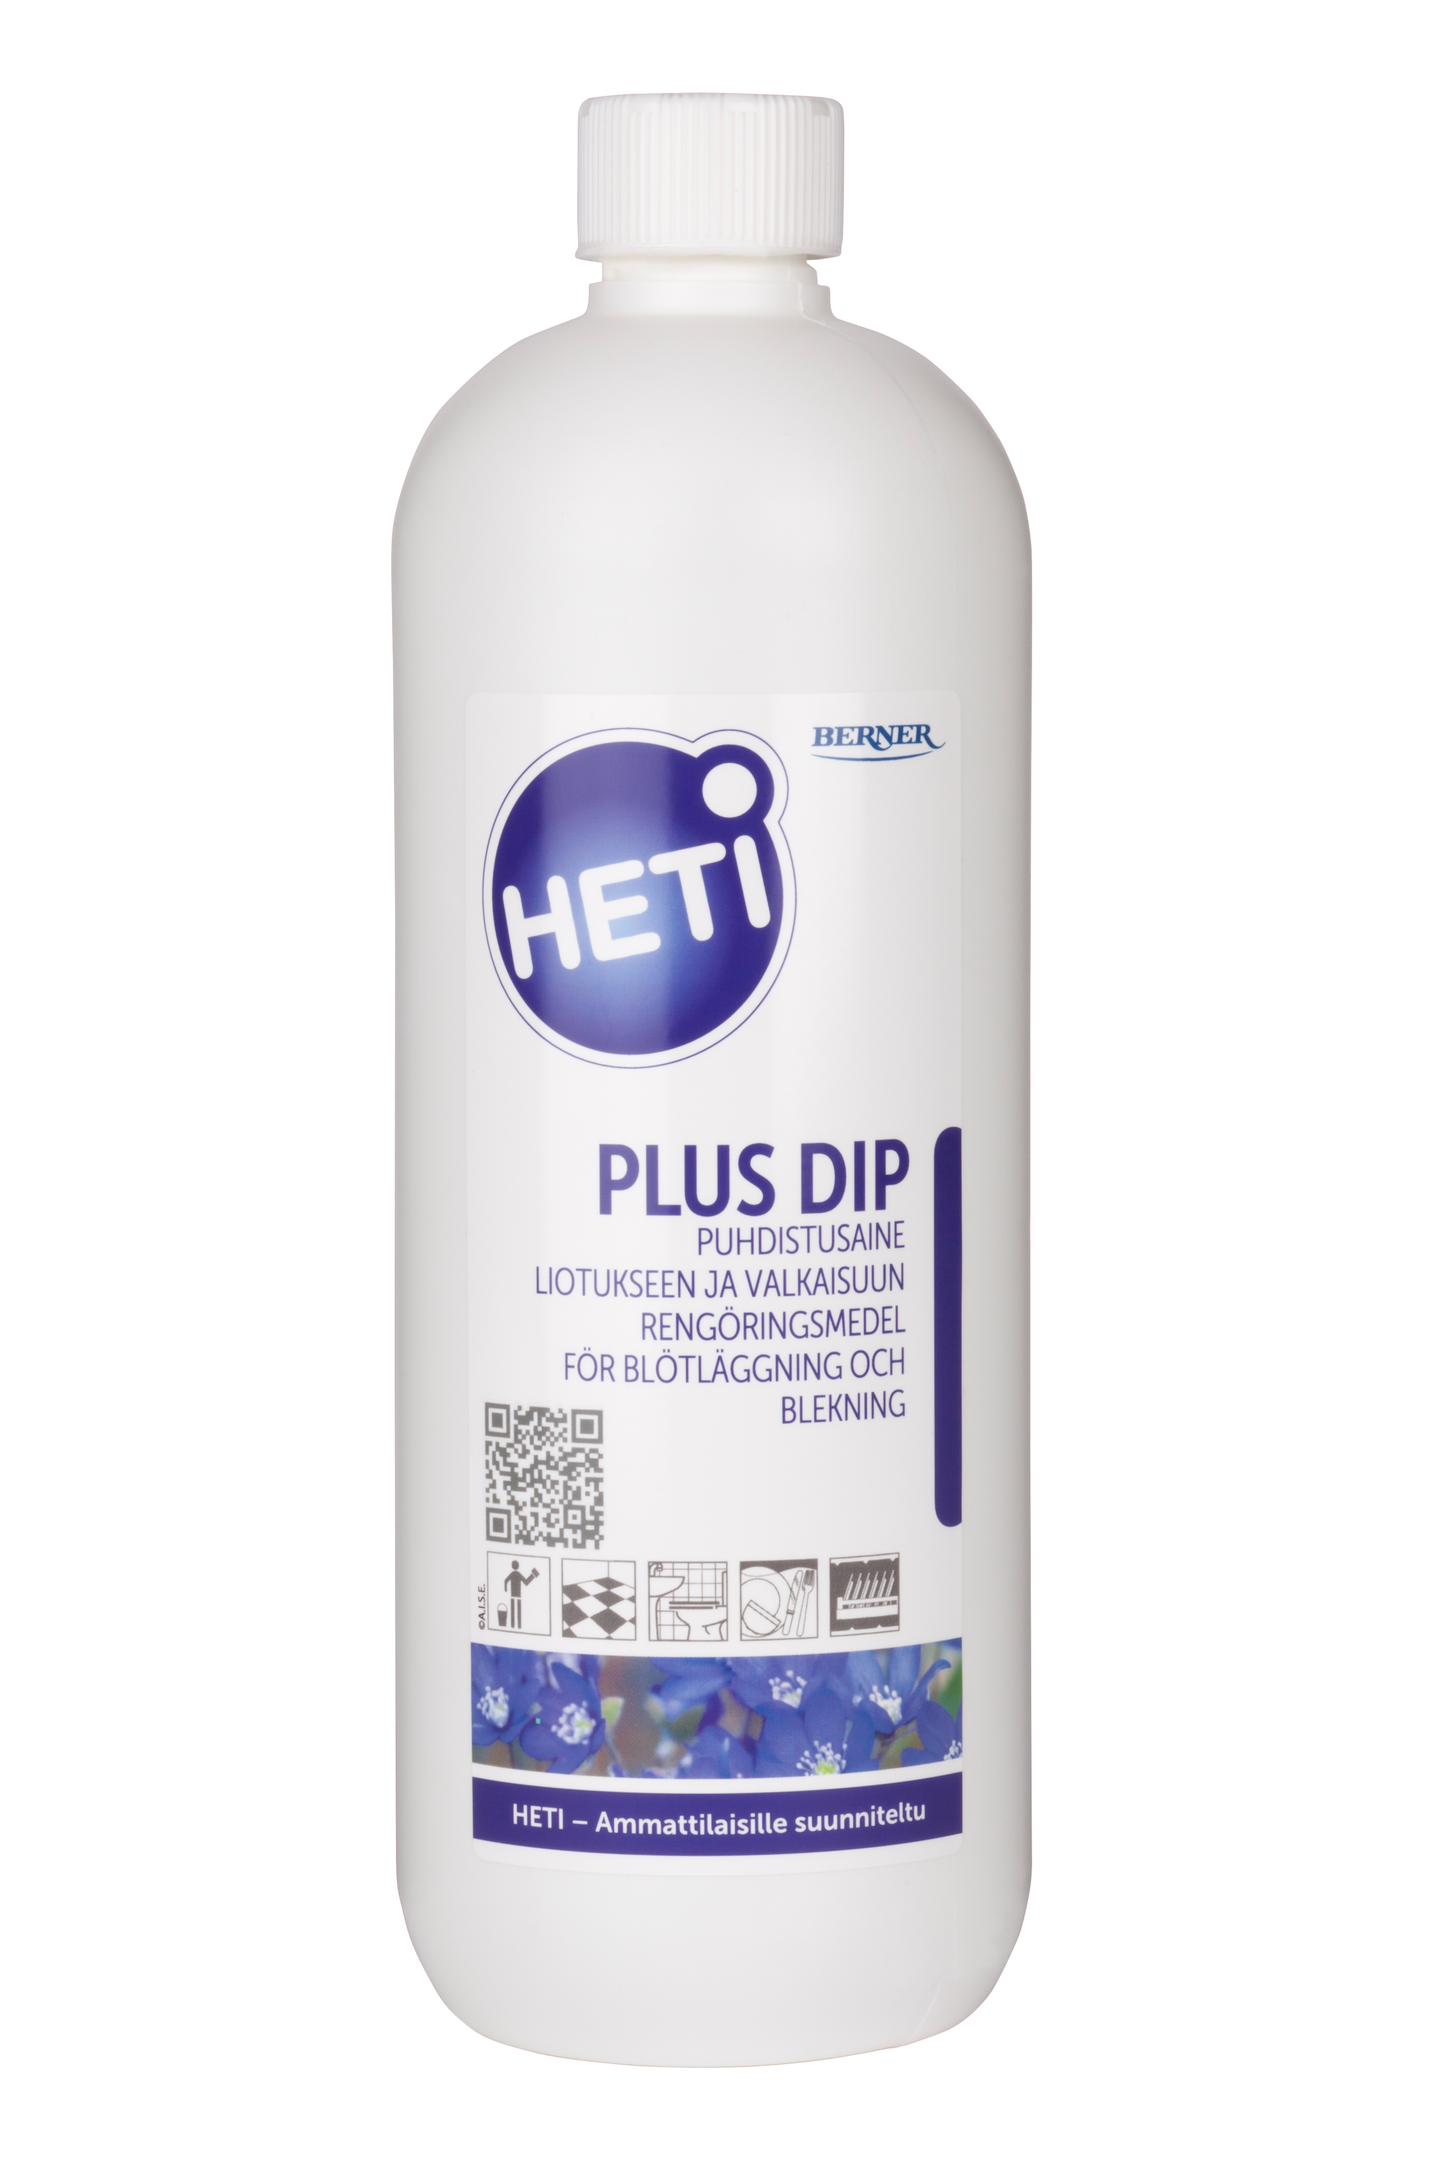 Heti Plus Dip puhdistusaine liotukseen ja valkaisuun 1l